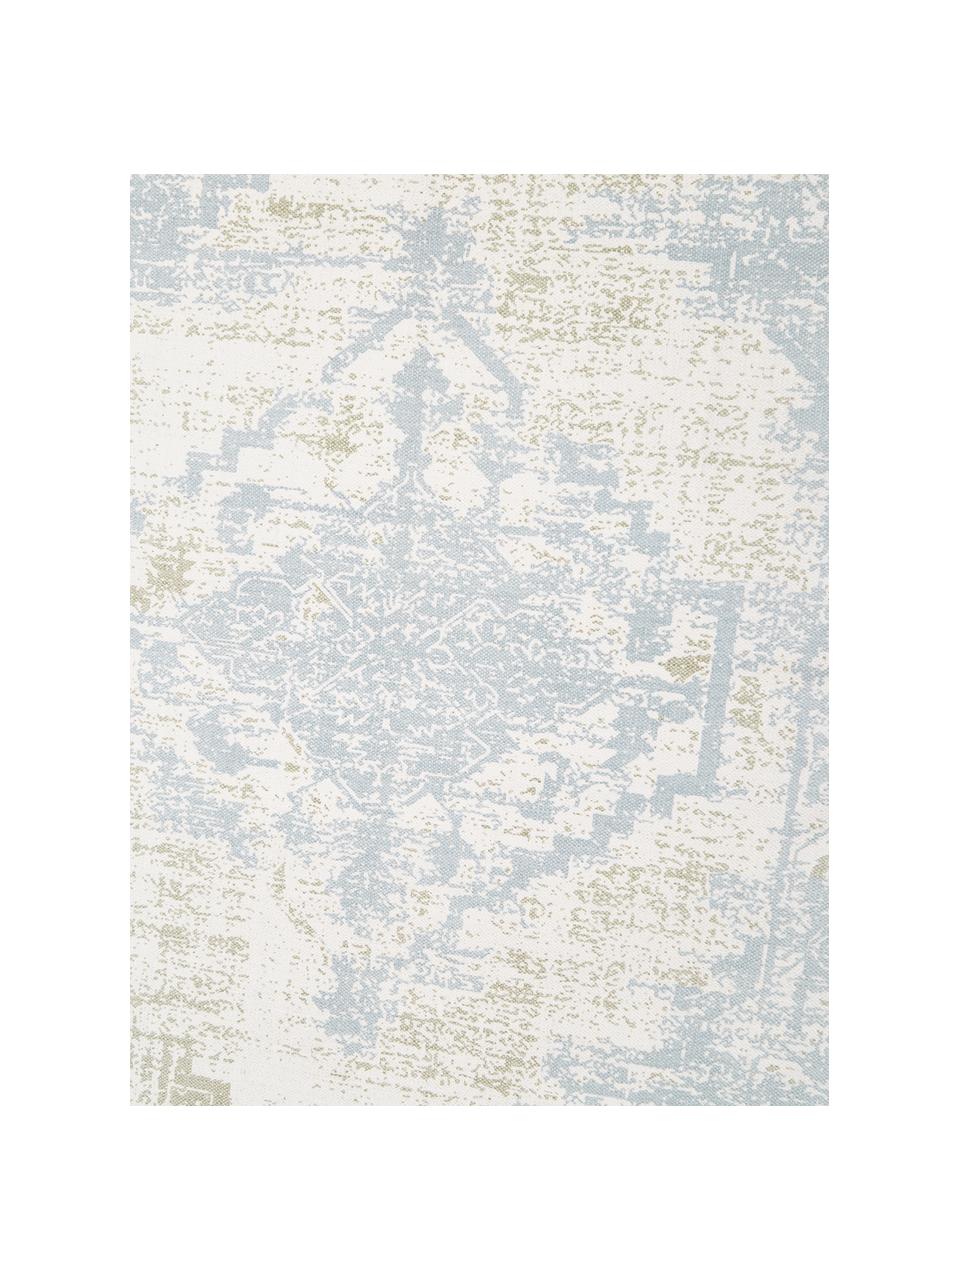 Dünner Baumwollteppich Jasmine in Beige/Blau im Vintage-Style, handgewebt, Blau- und Weisstöne, B 70 x L 140 cm (Grösse XS)